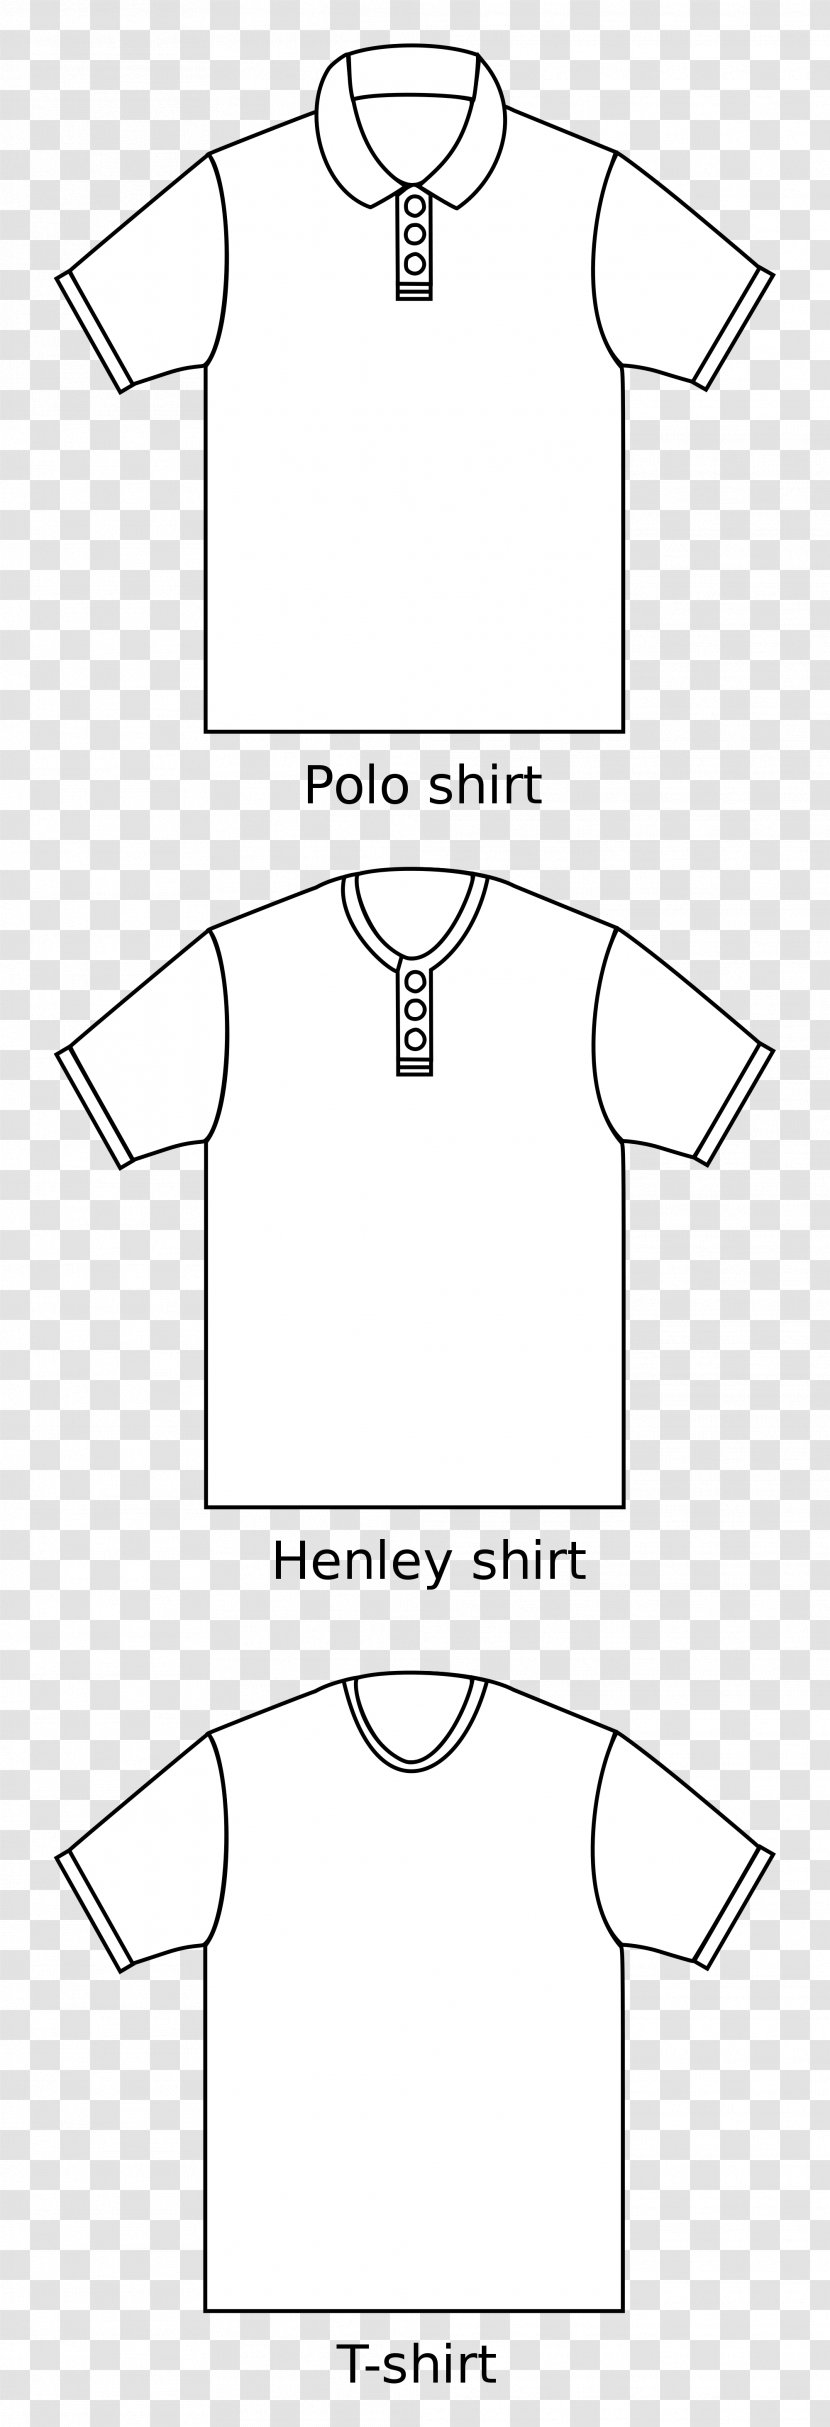 T-shirt Blouse Dress Shirt Collar Transparent PNG